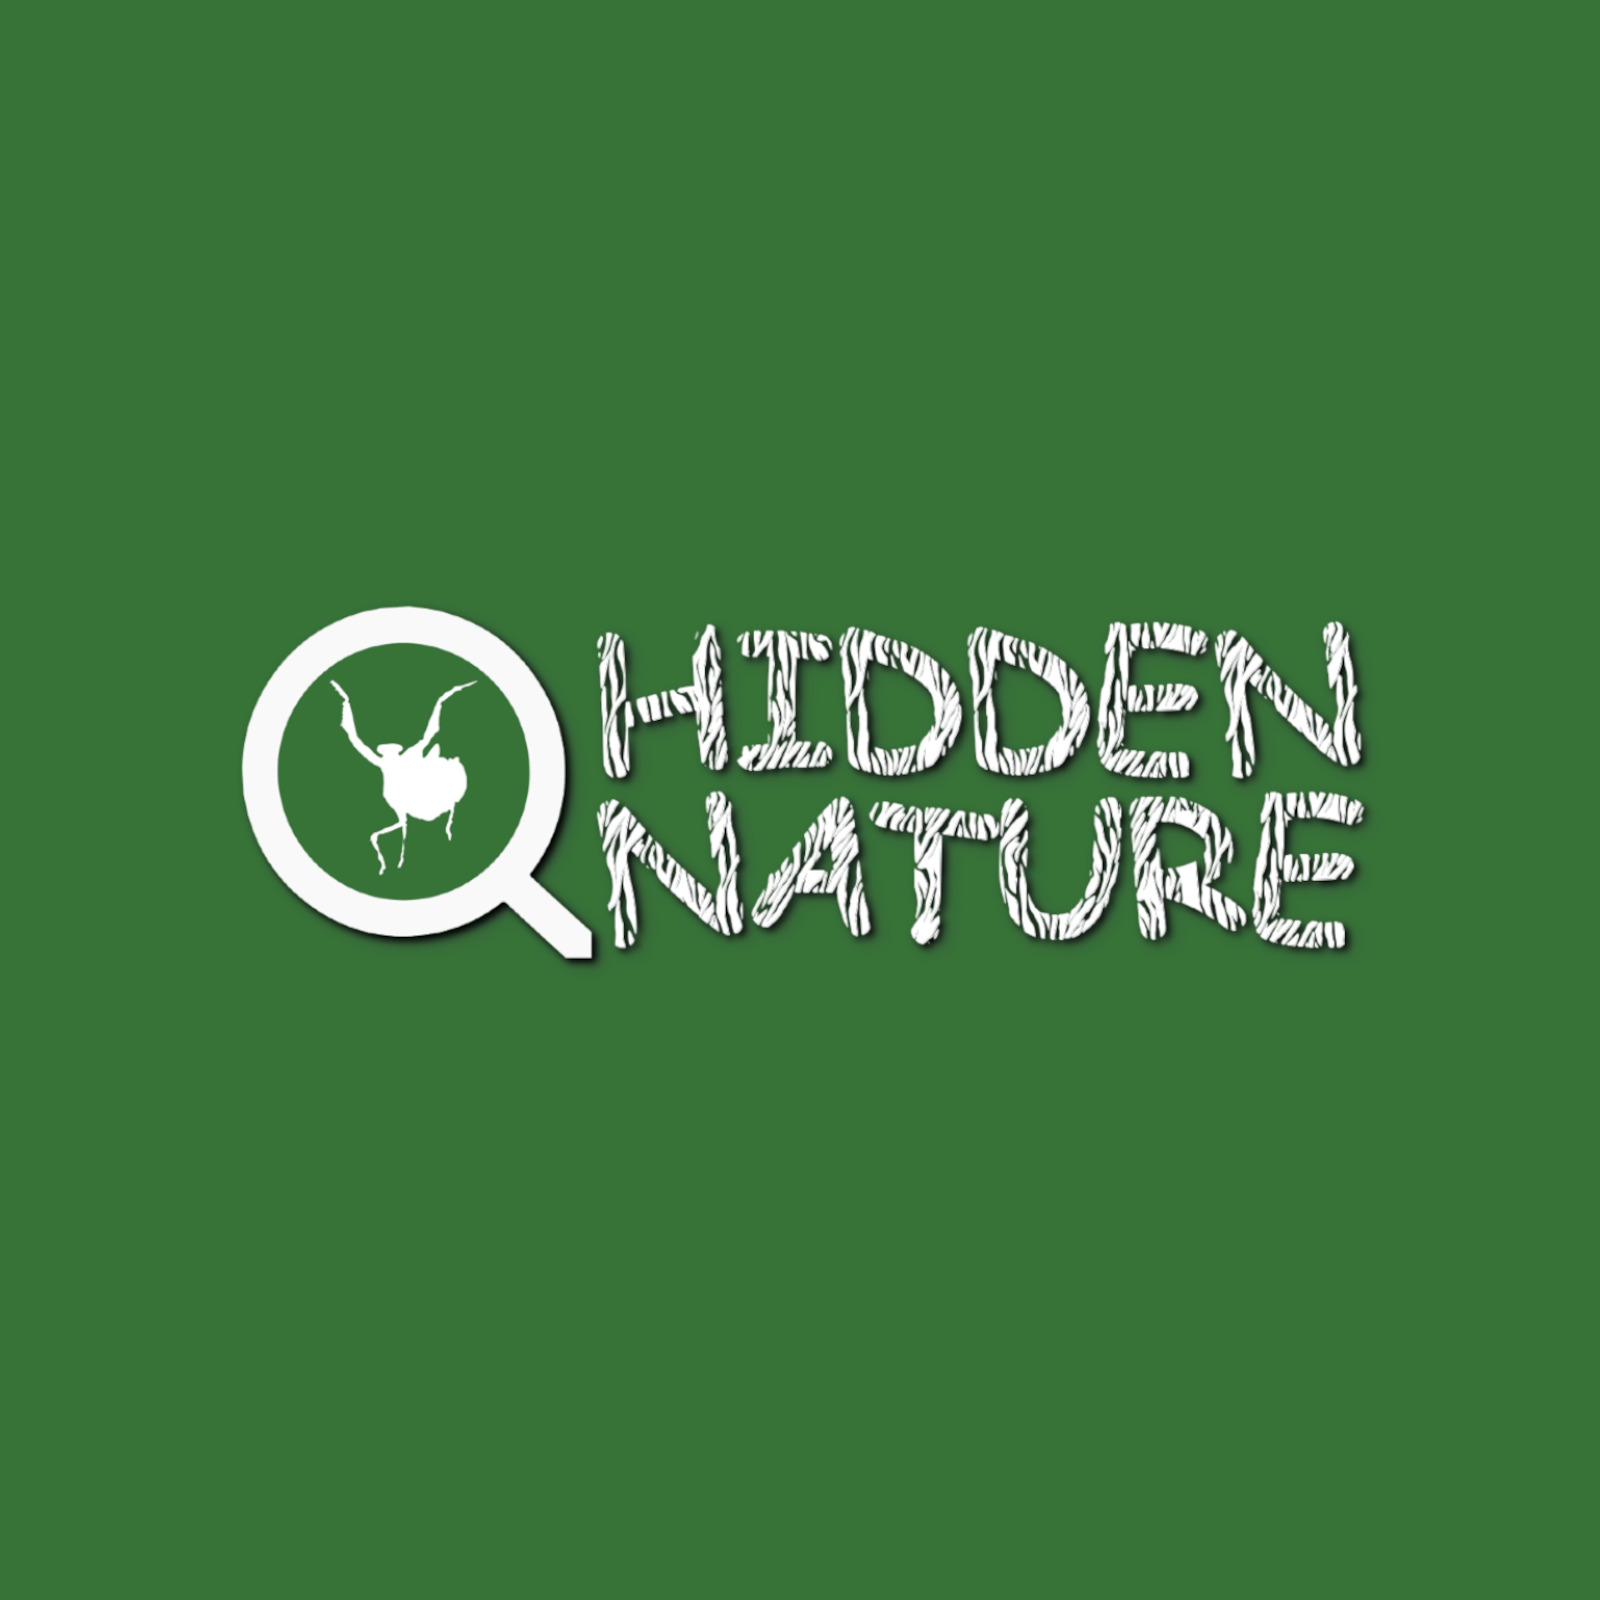 (c) Hidden-nature.com